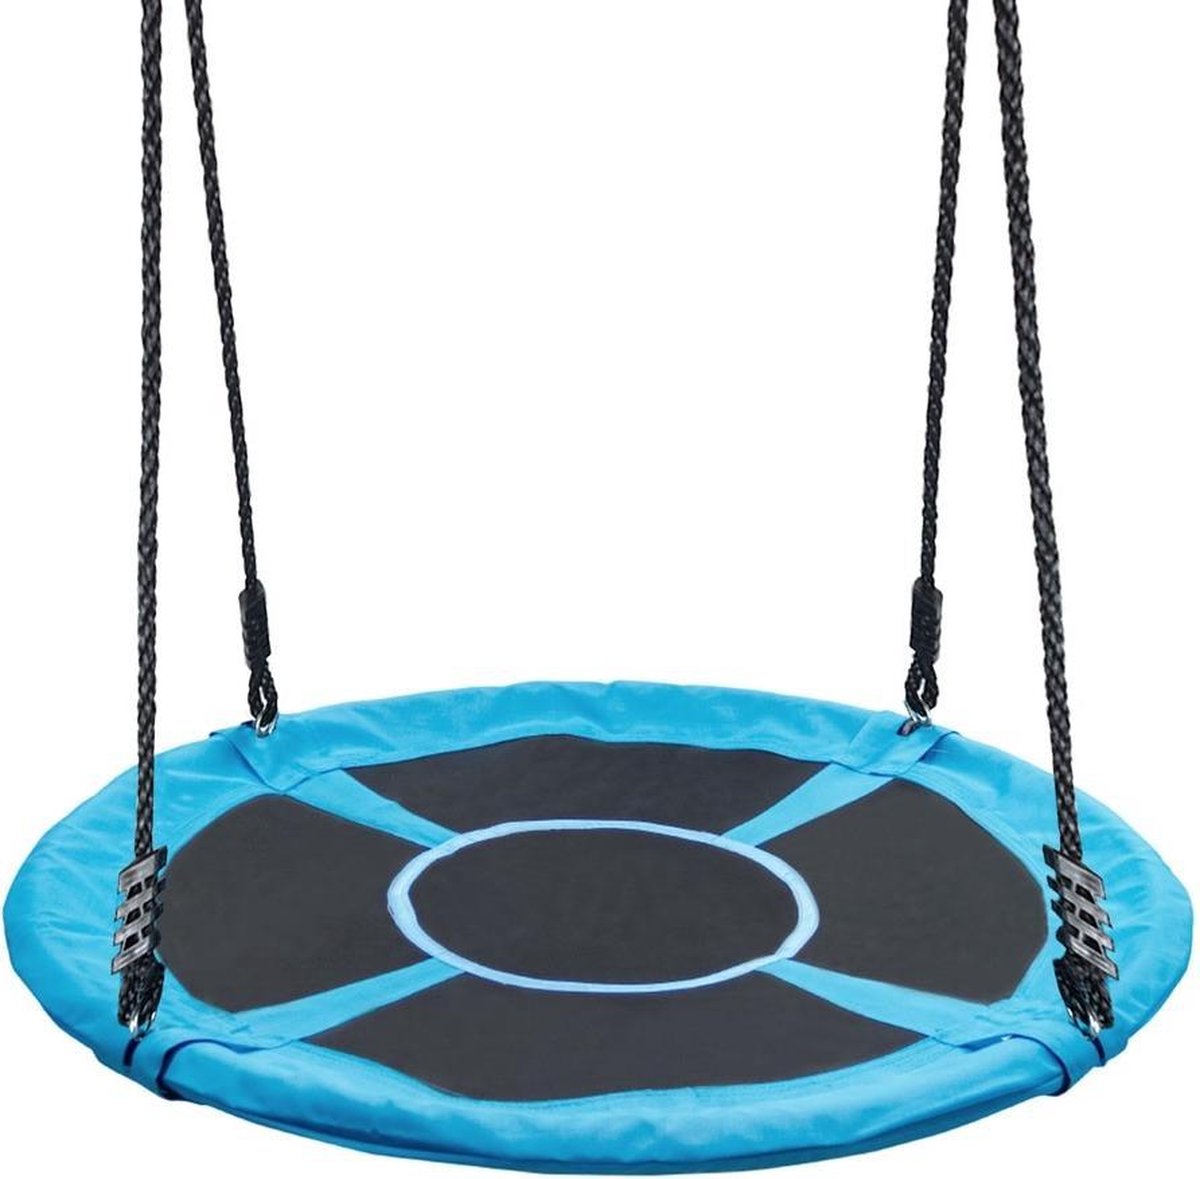 Nestschommel Pro - Ronde schommel - 200kg belasting - Voor kinderen en volwassenen - Ø 100 cm / Blauw